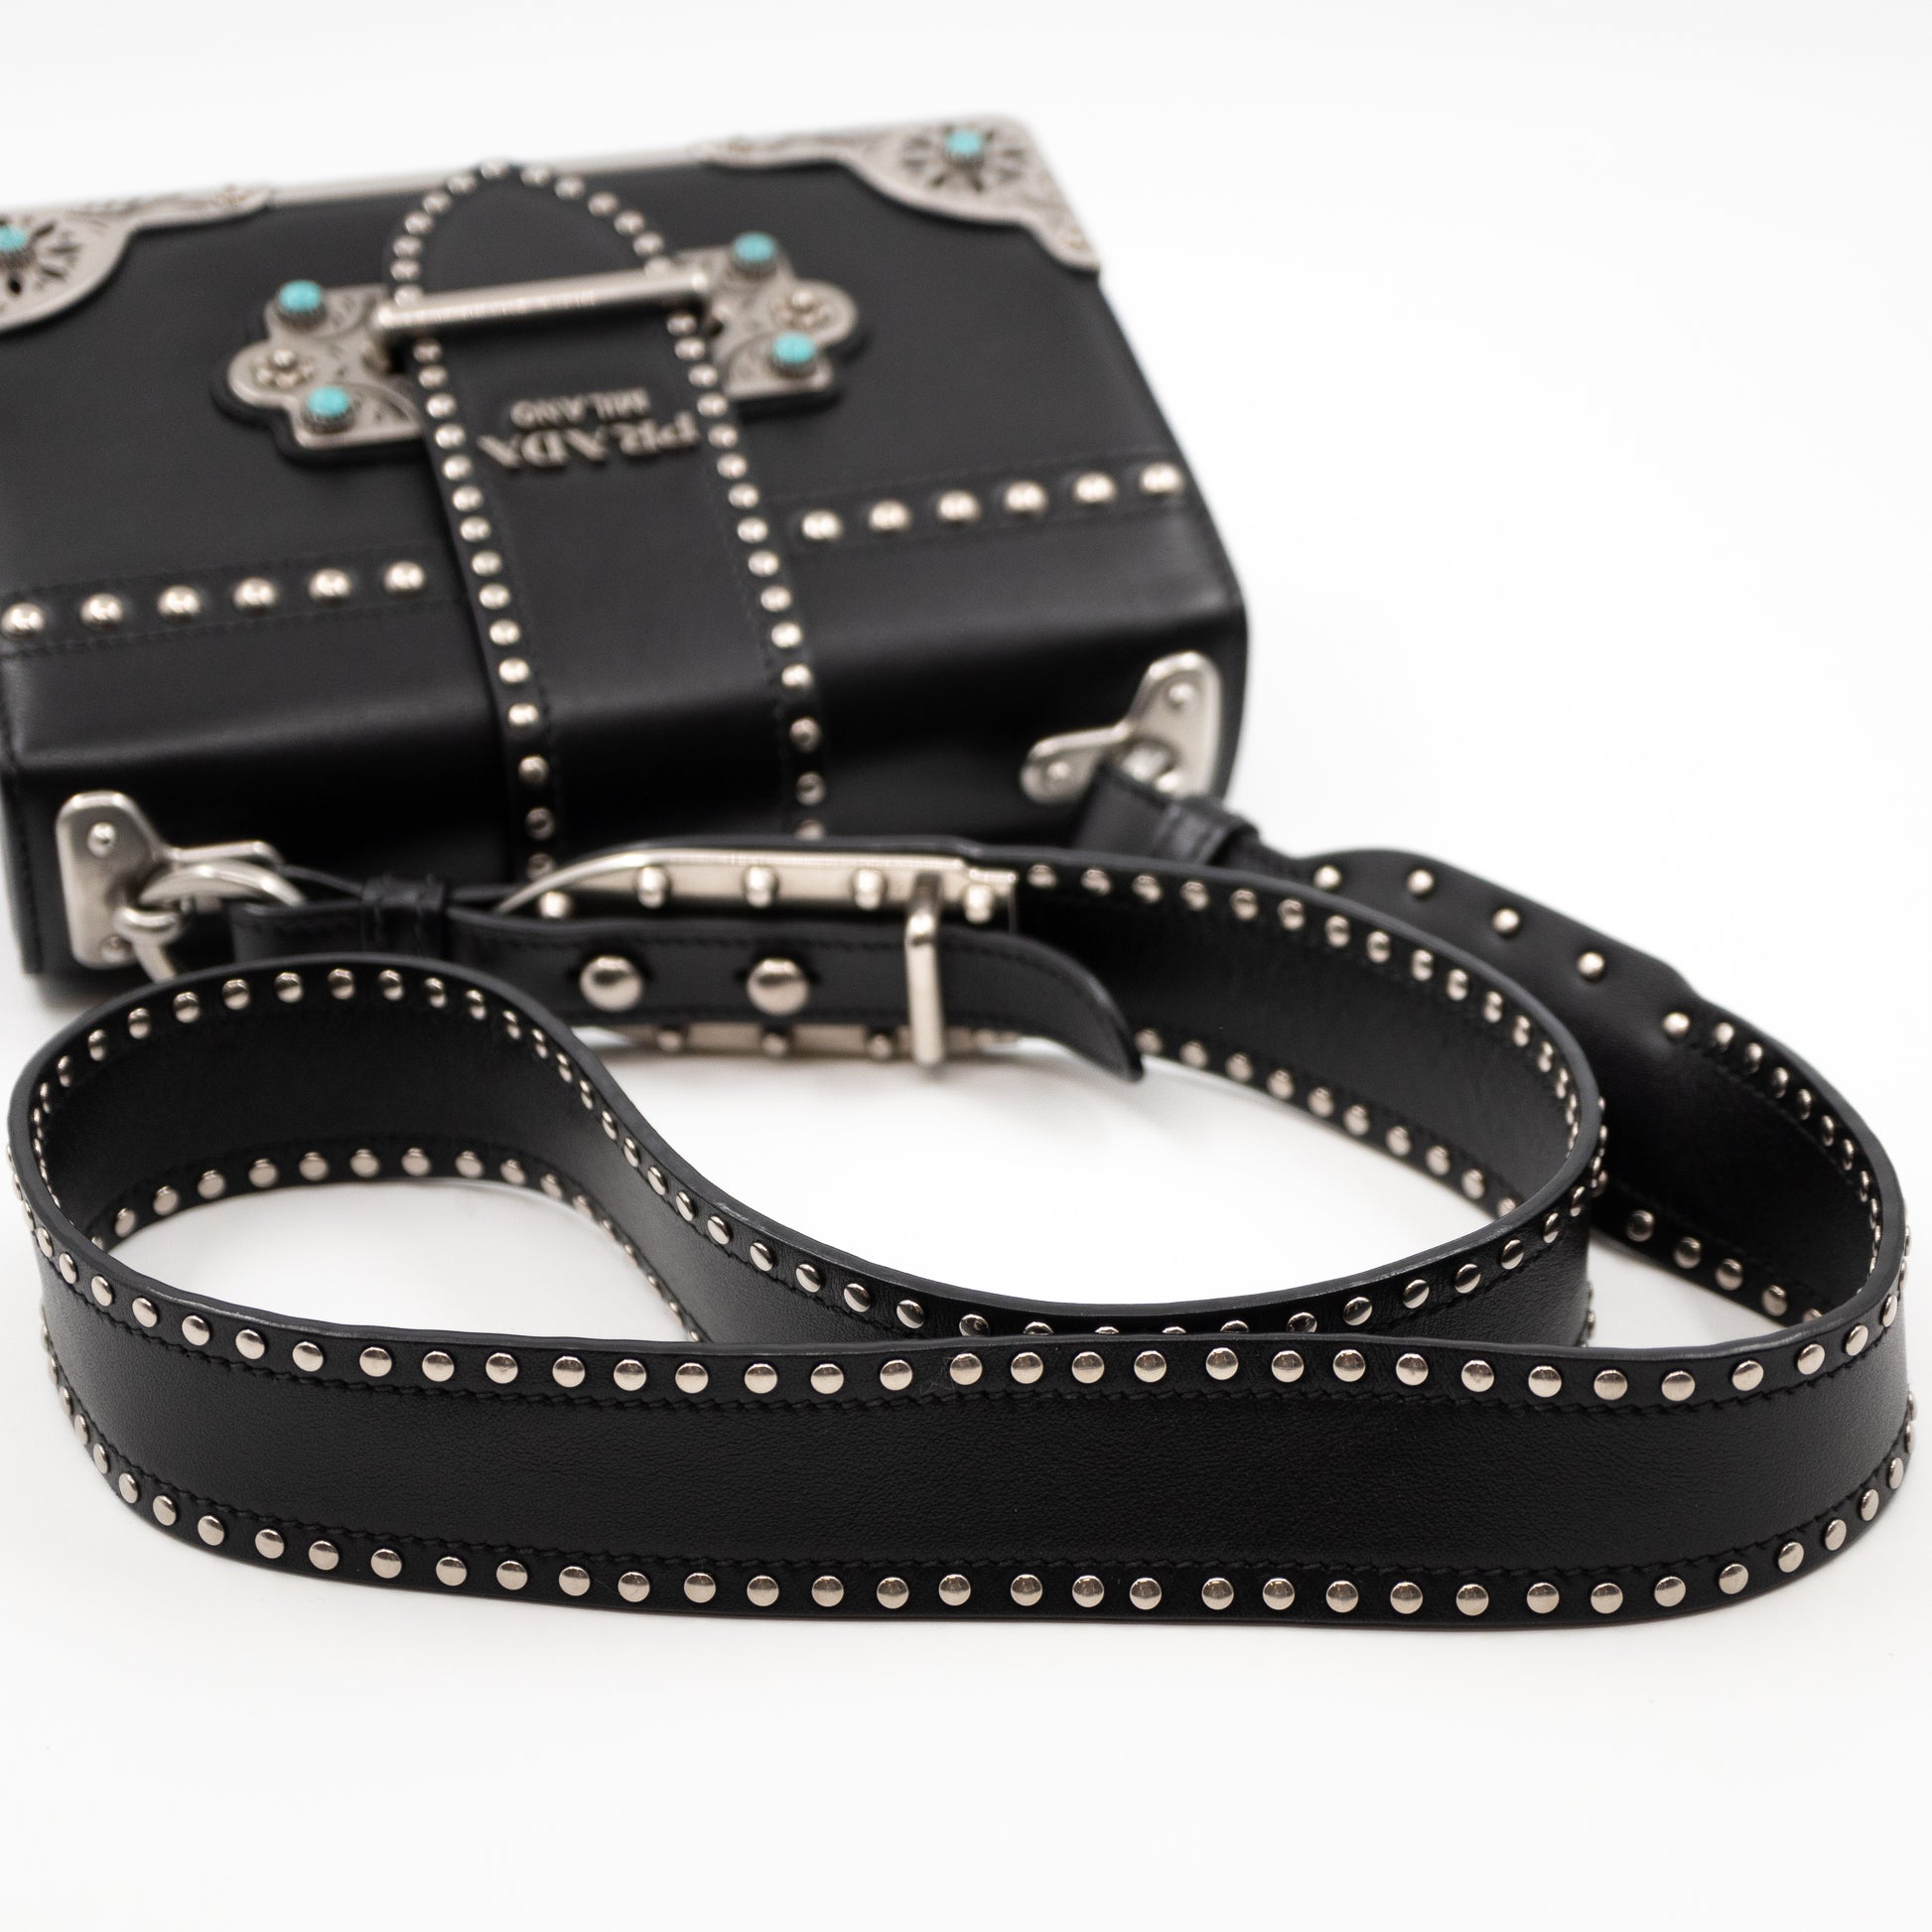 Prada Cahier Studded Leather Shoulder Bag in Black